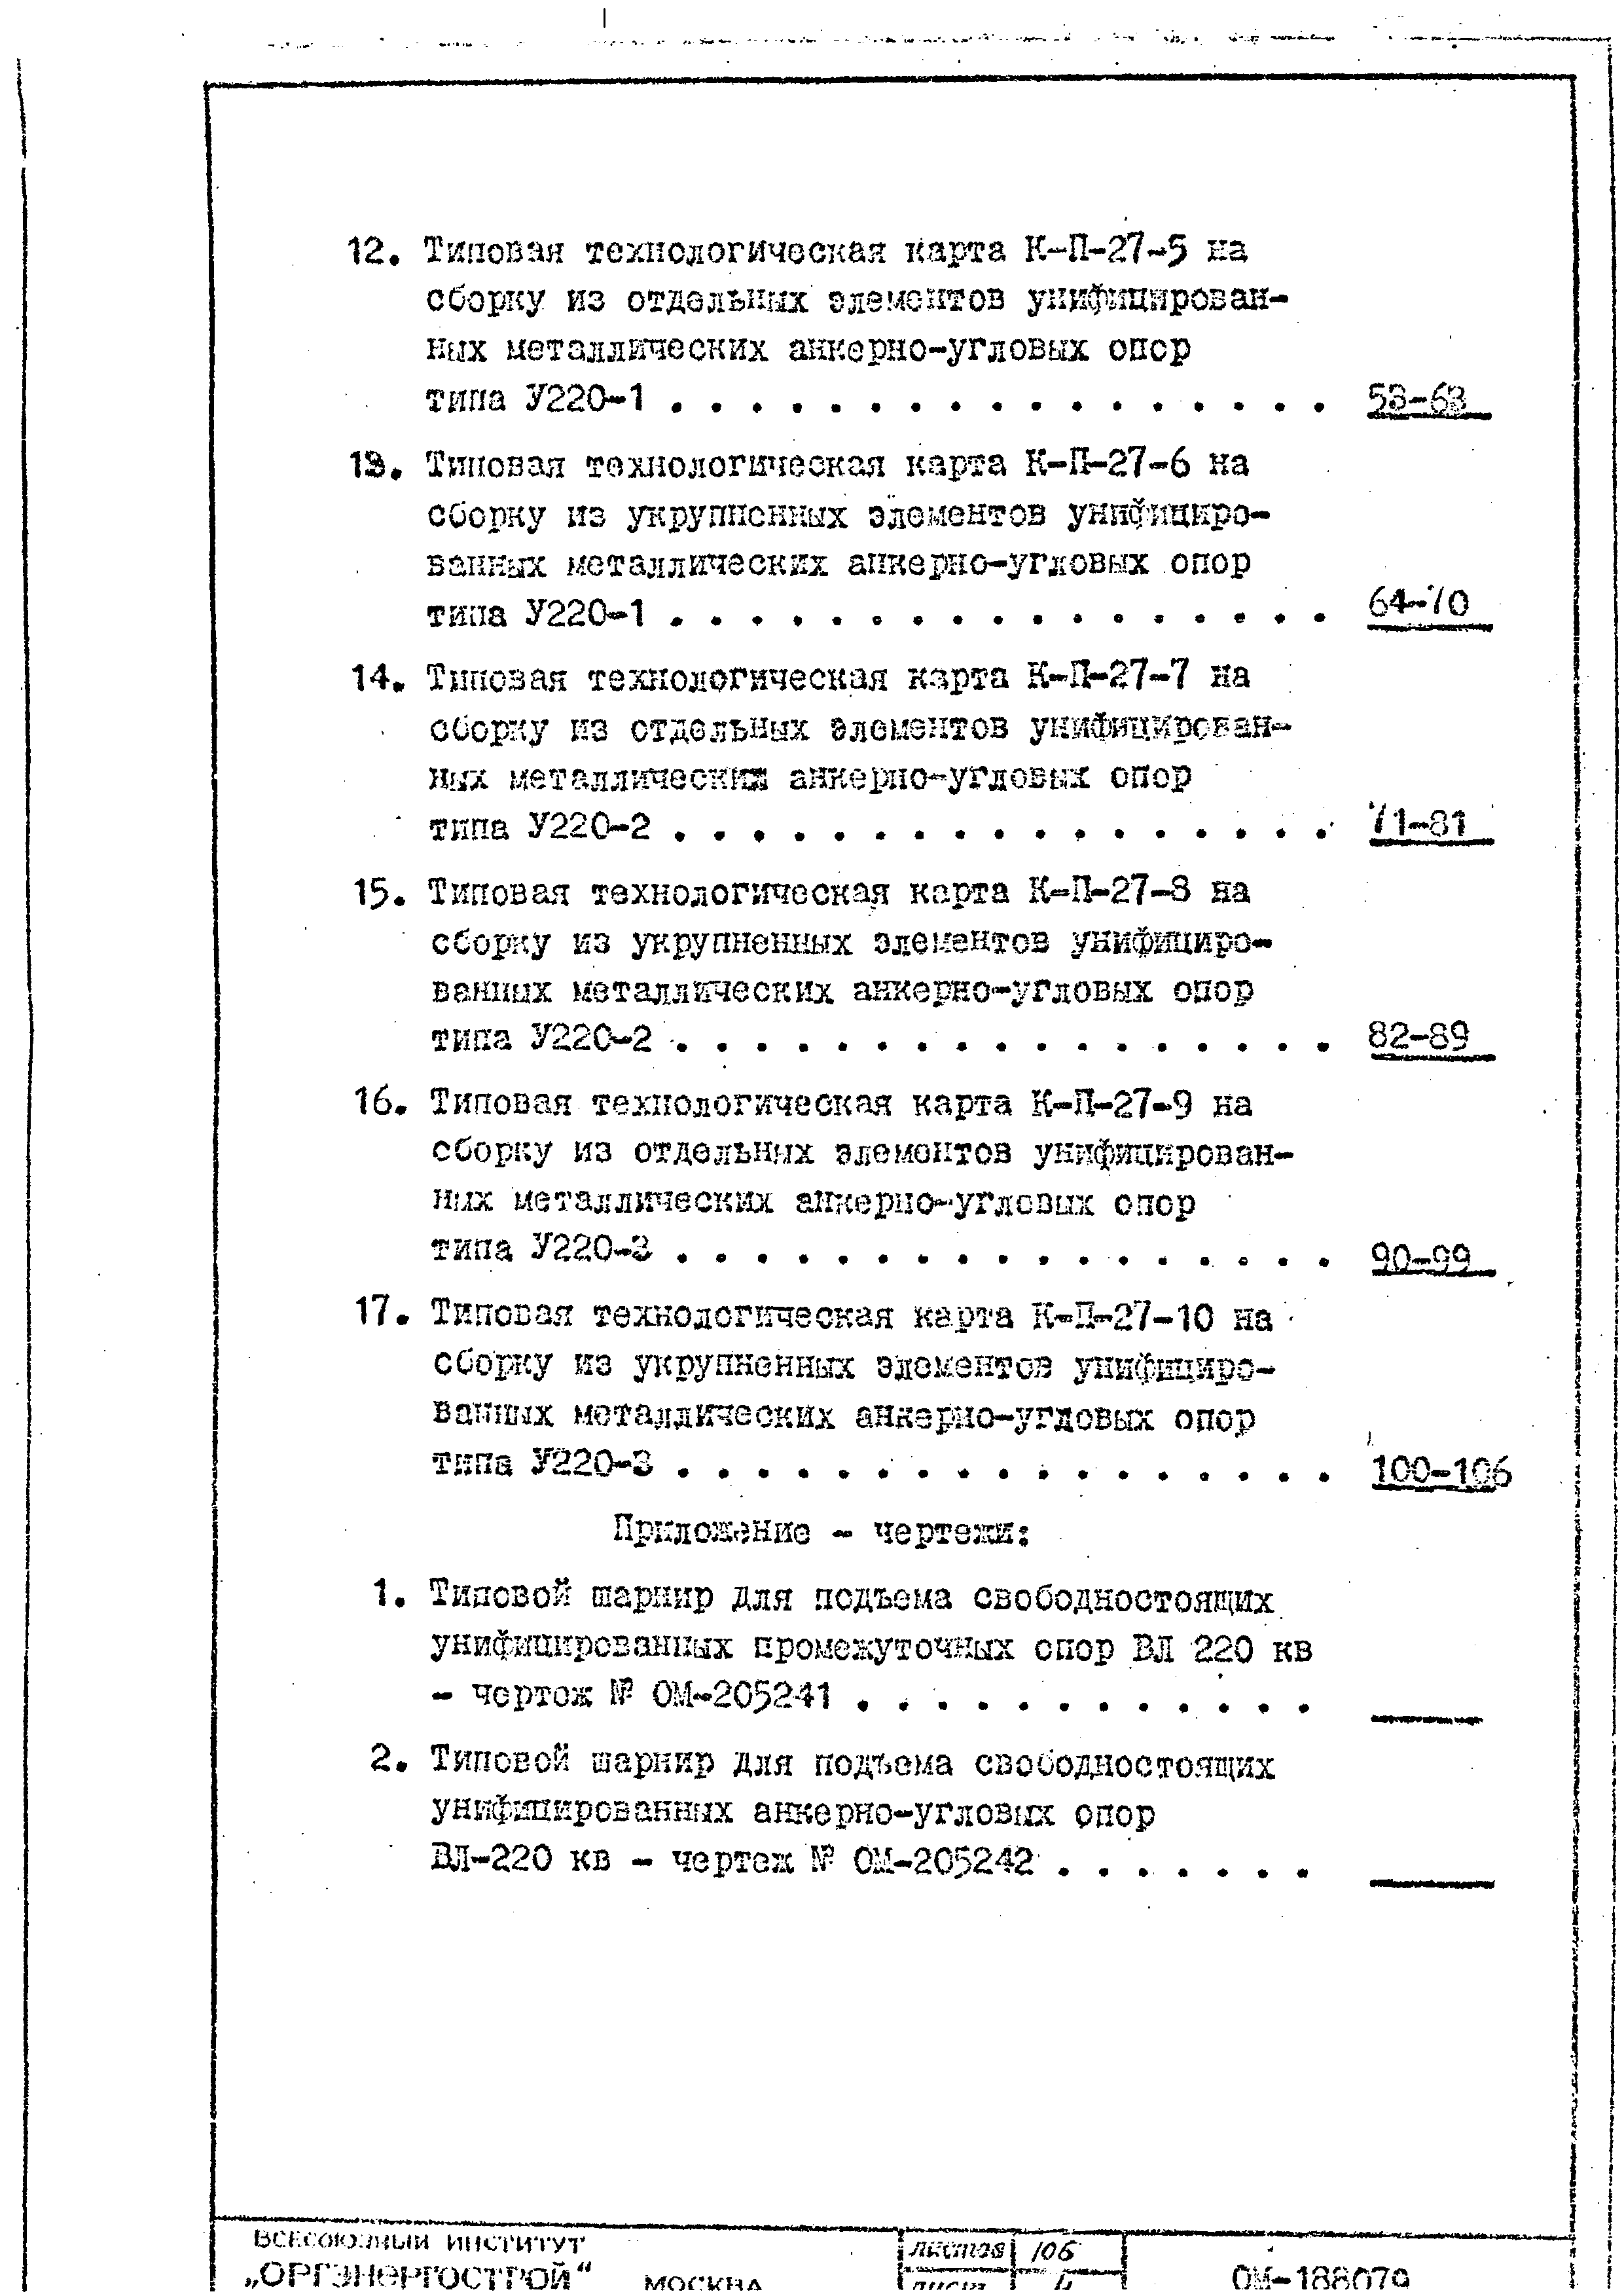 ТТК К-II-27-6